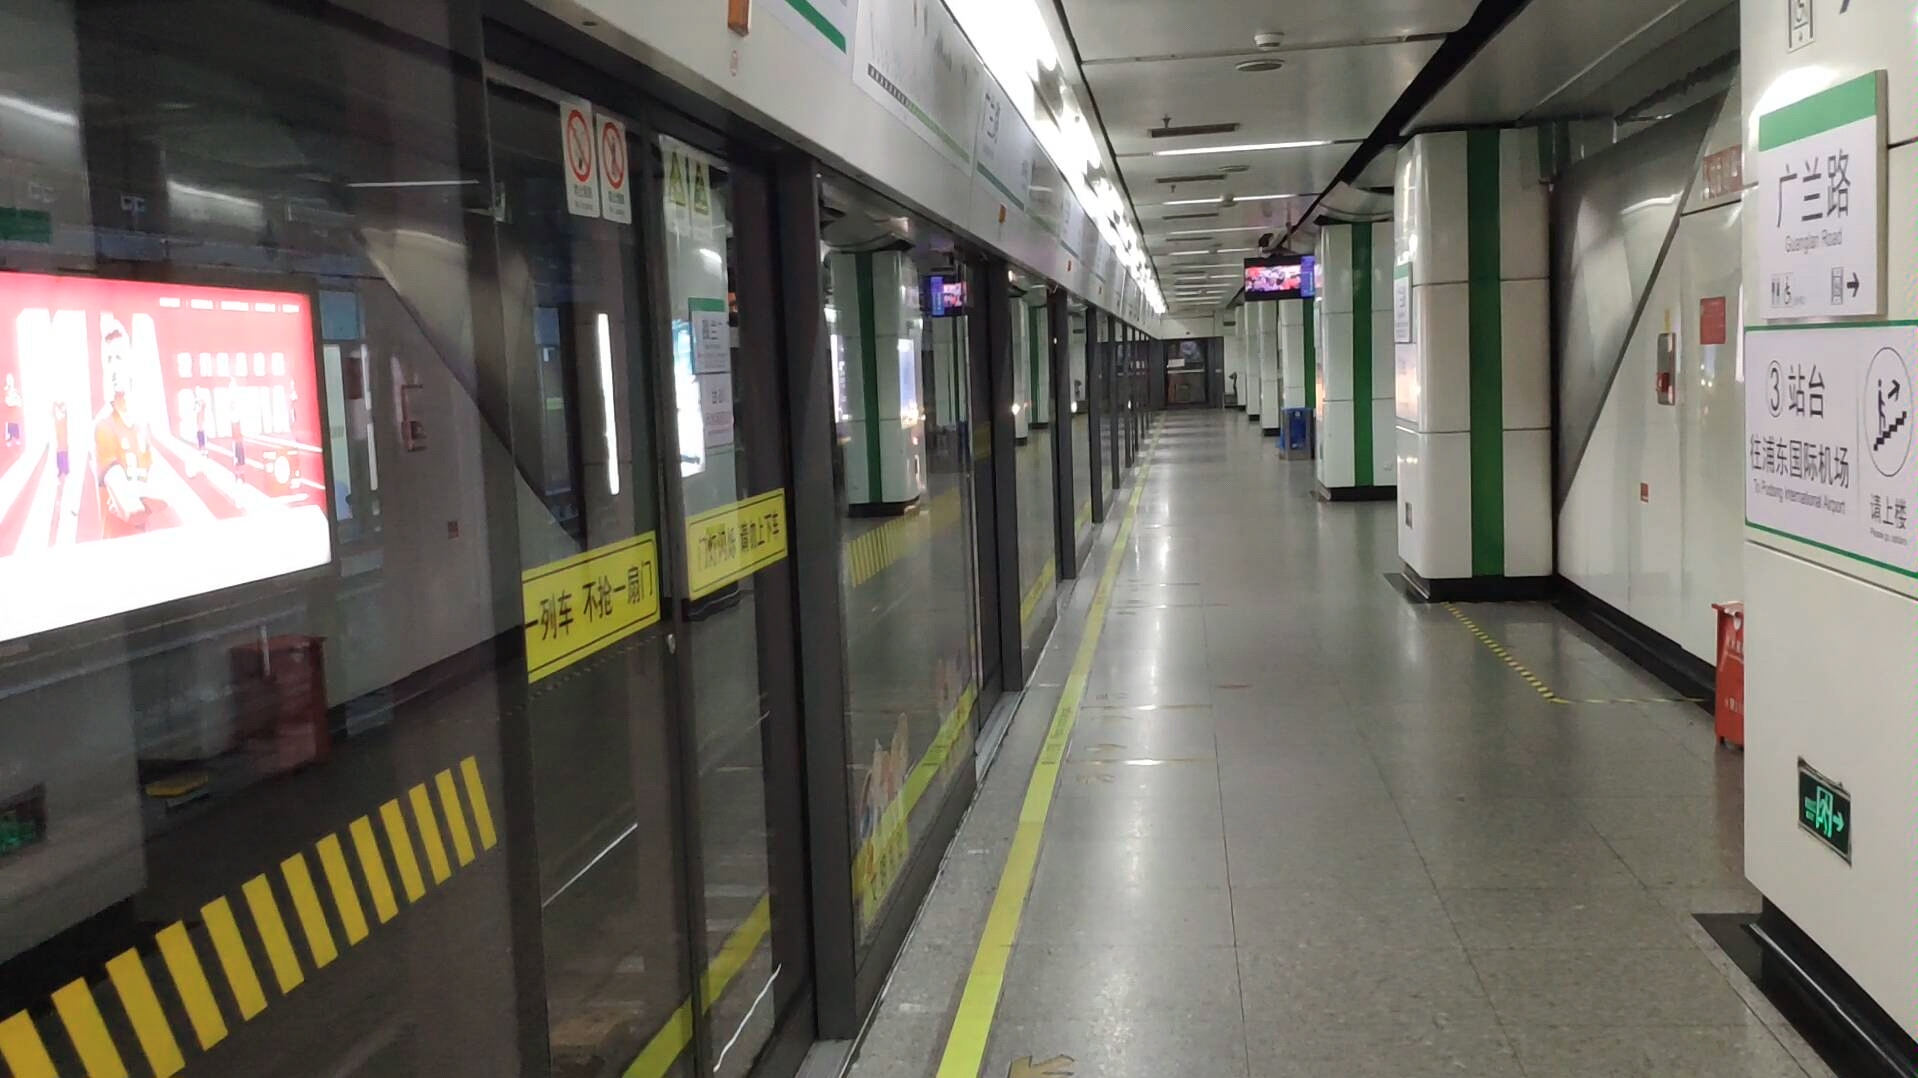 上海地铁2号线02a02型列车0248号车到达广兰路站2号站台终点站